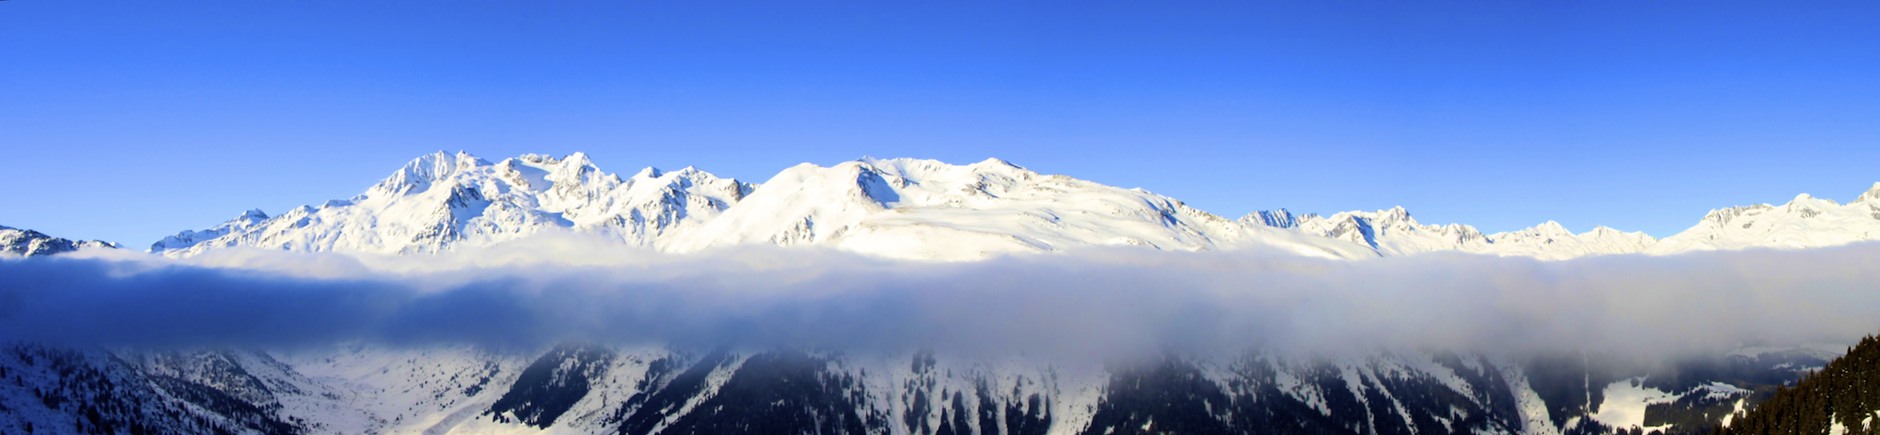 Panorama Nebelobergrenze